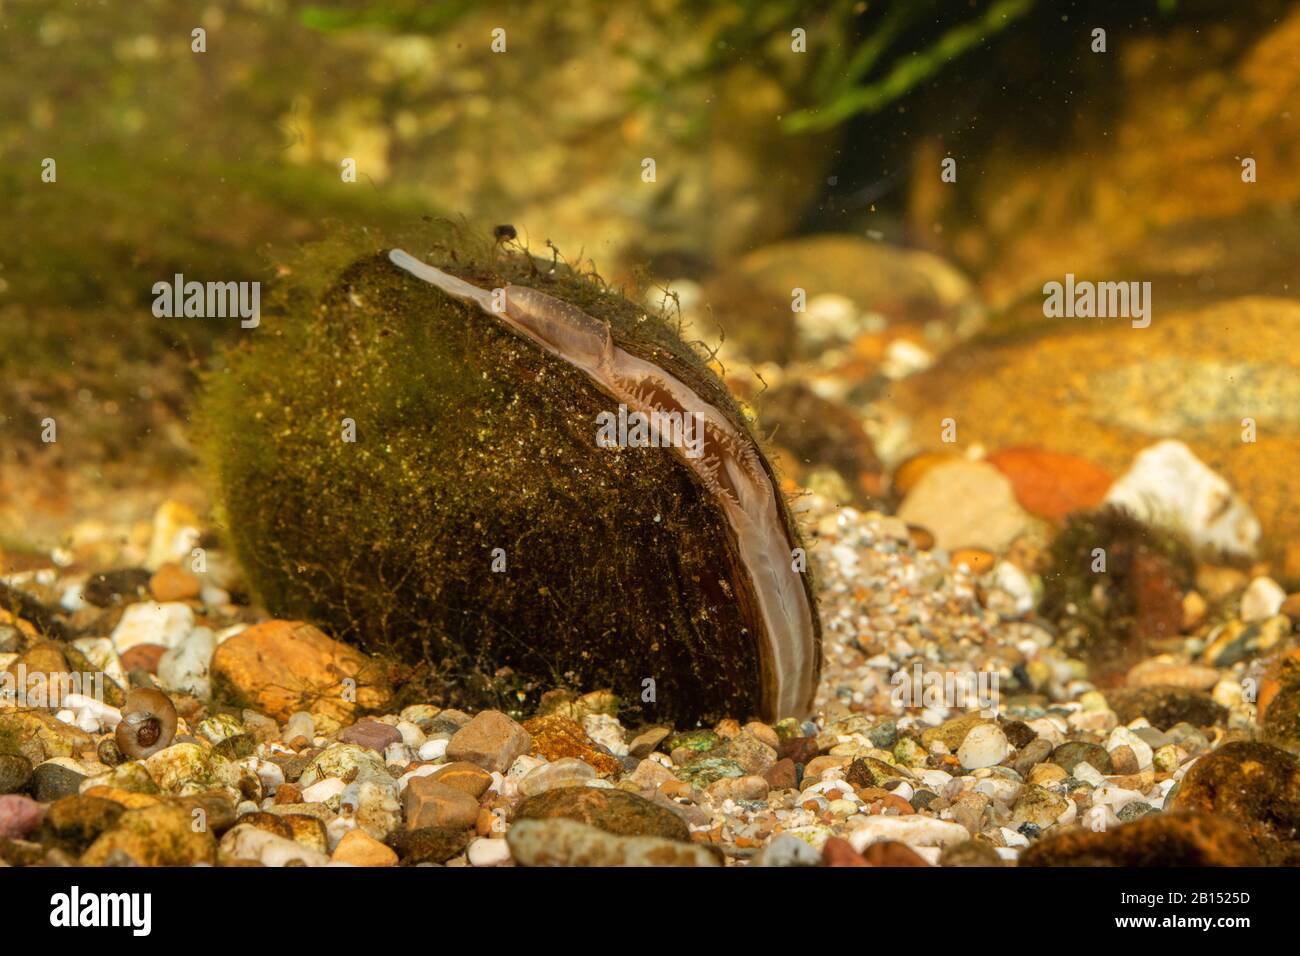 Mejillón común del estanque, mejillón del pato (Anodonta anatina), con sifonas visibles para la respiración y la excreción, Alemania Foto de stock